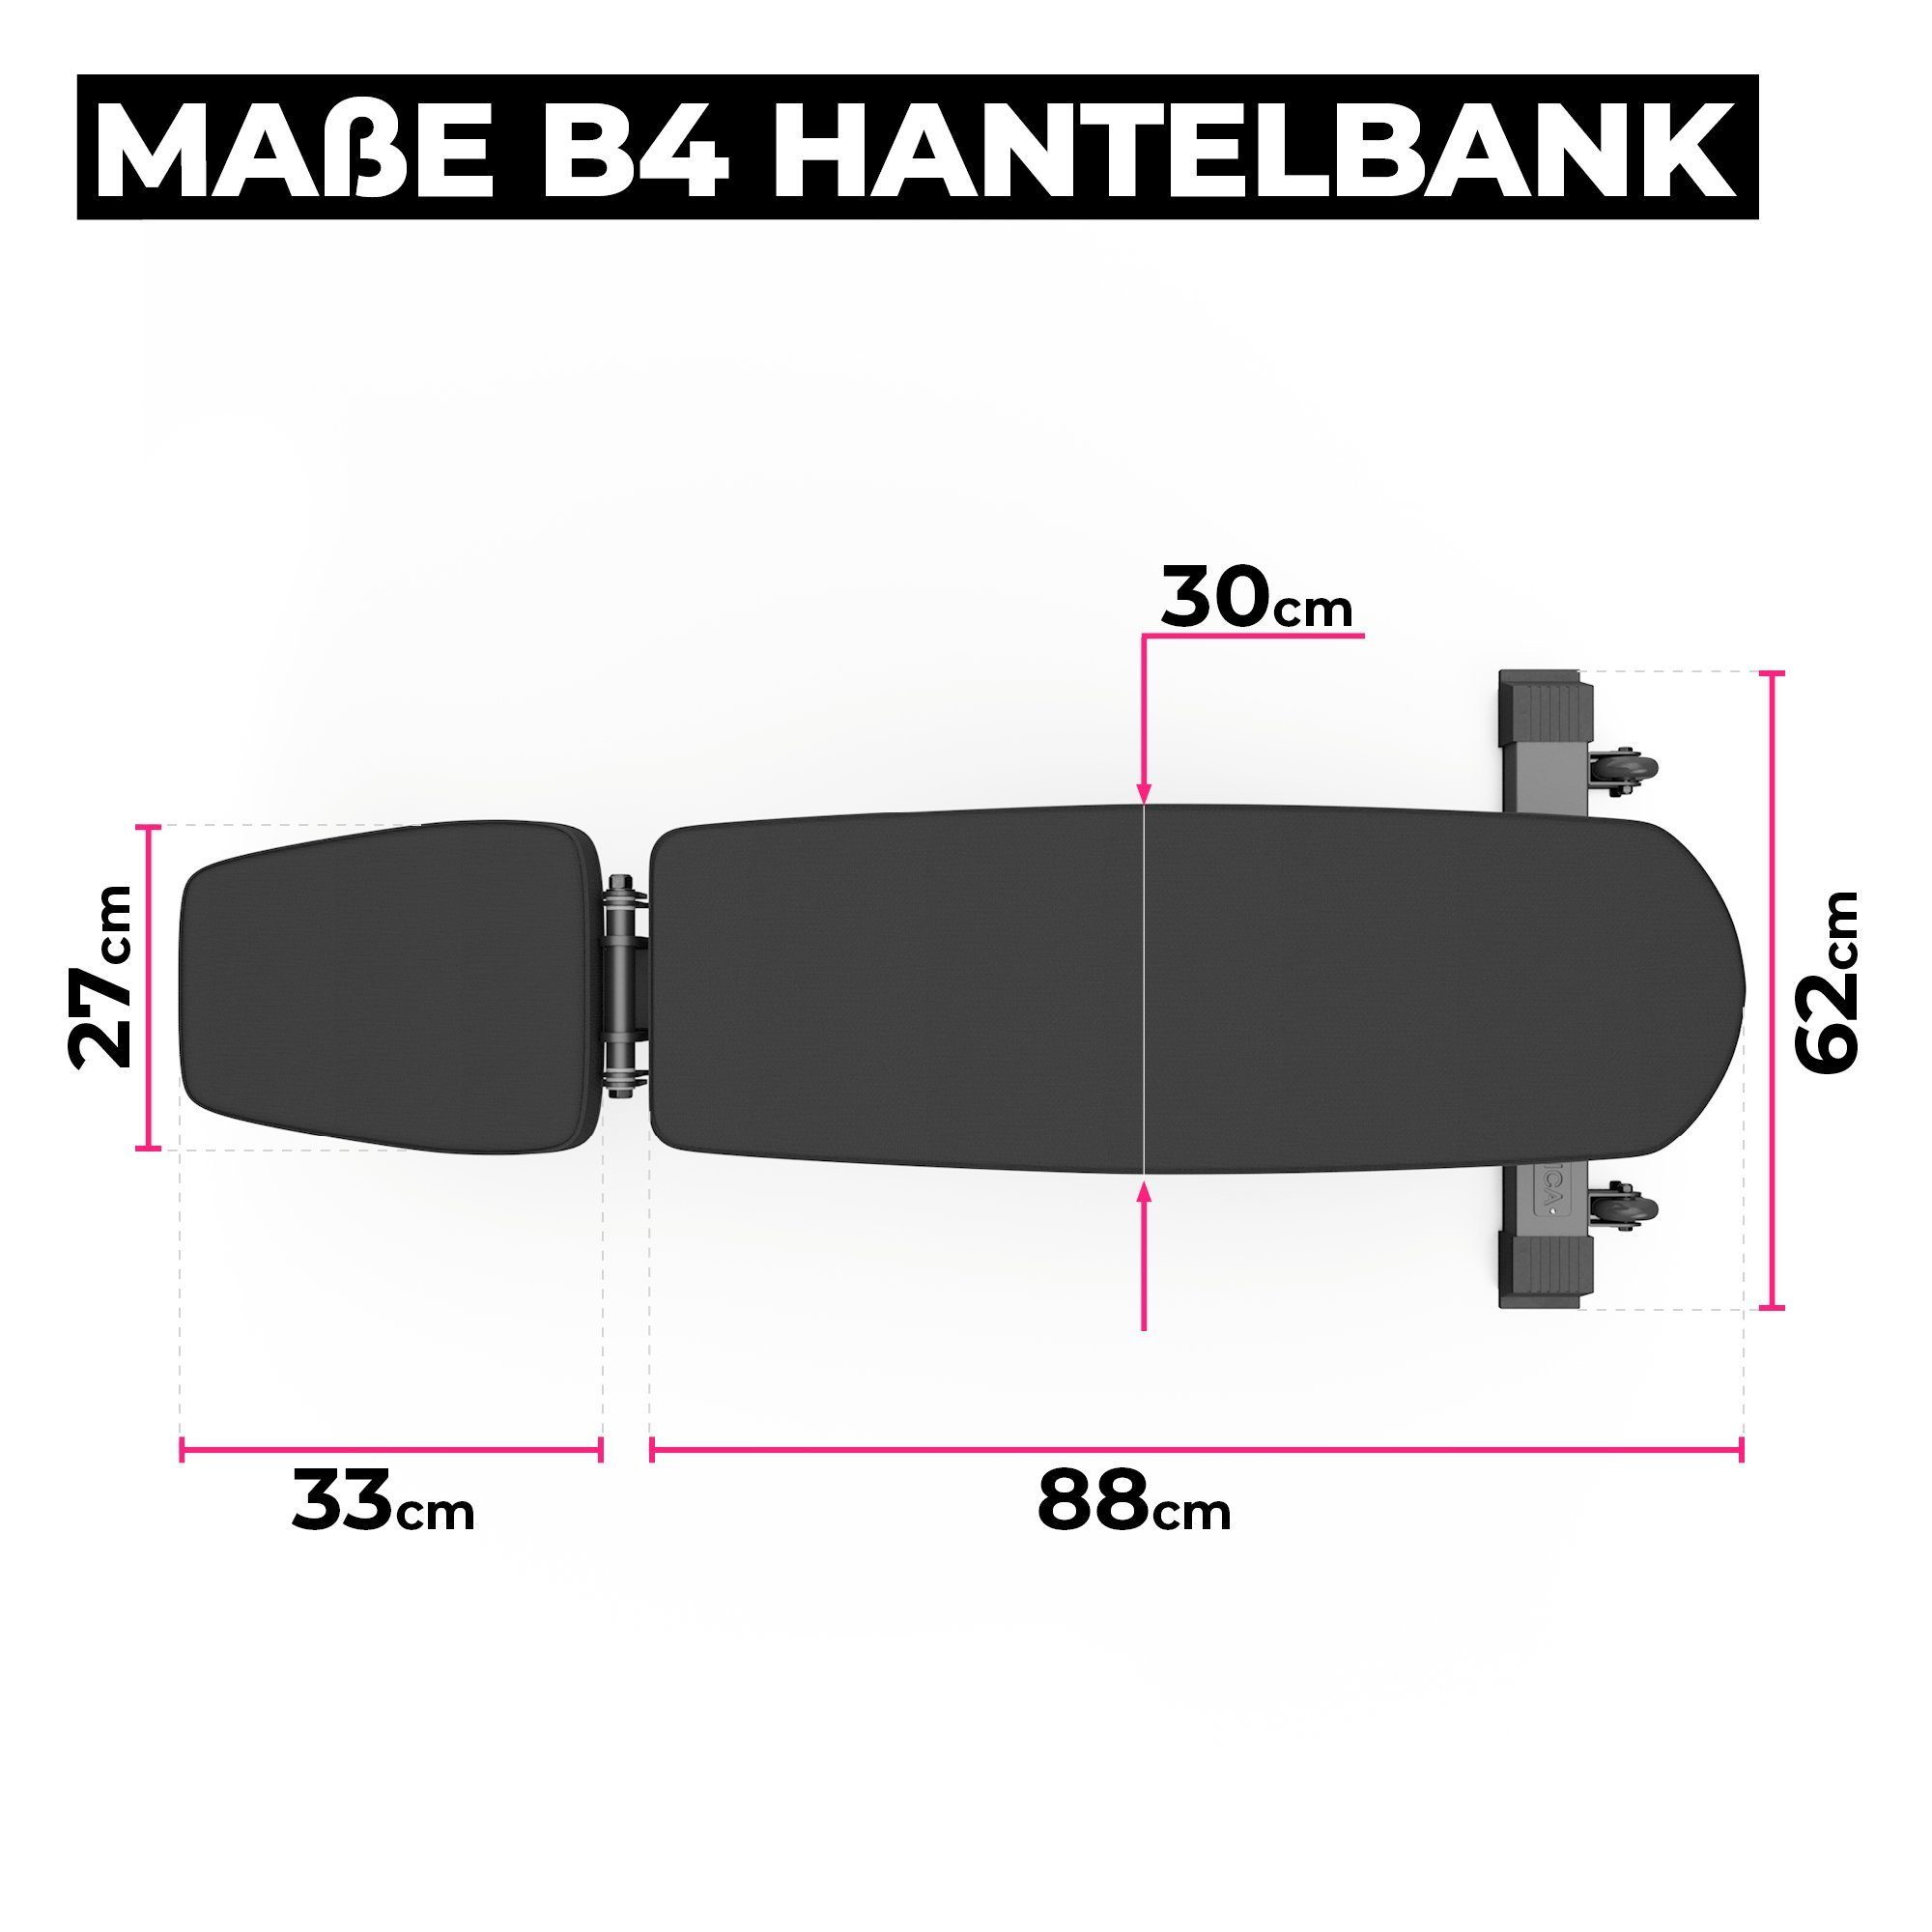 450 Verstellbare kg Hantelbank Hantelbank, Bis belastbar, schwer 30 ATLETICA B4 kg